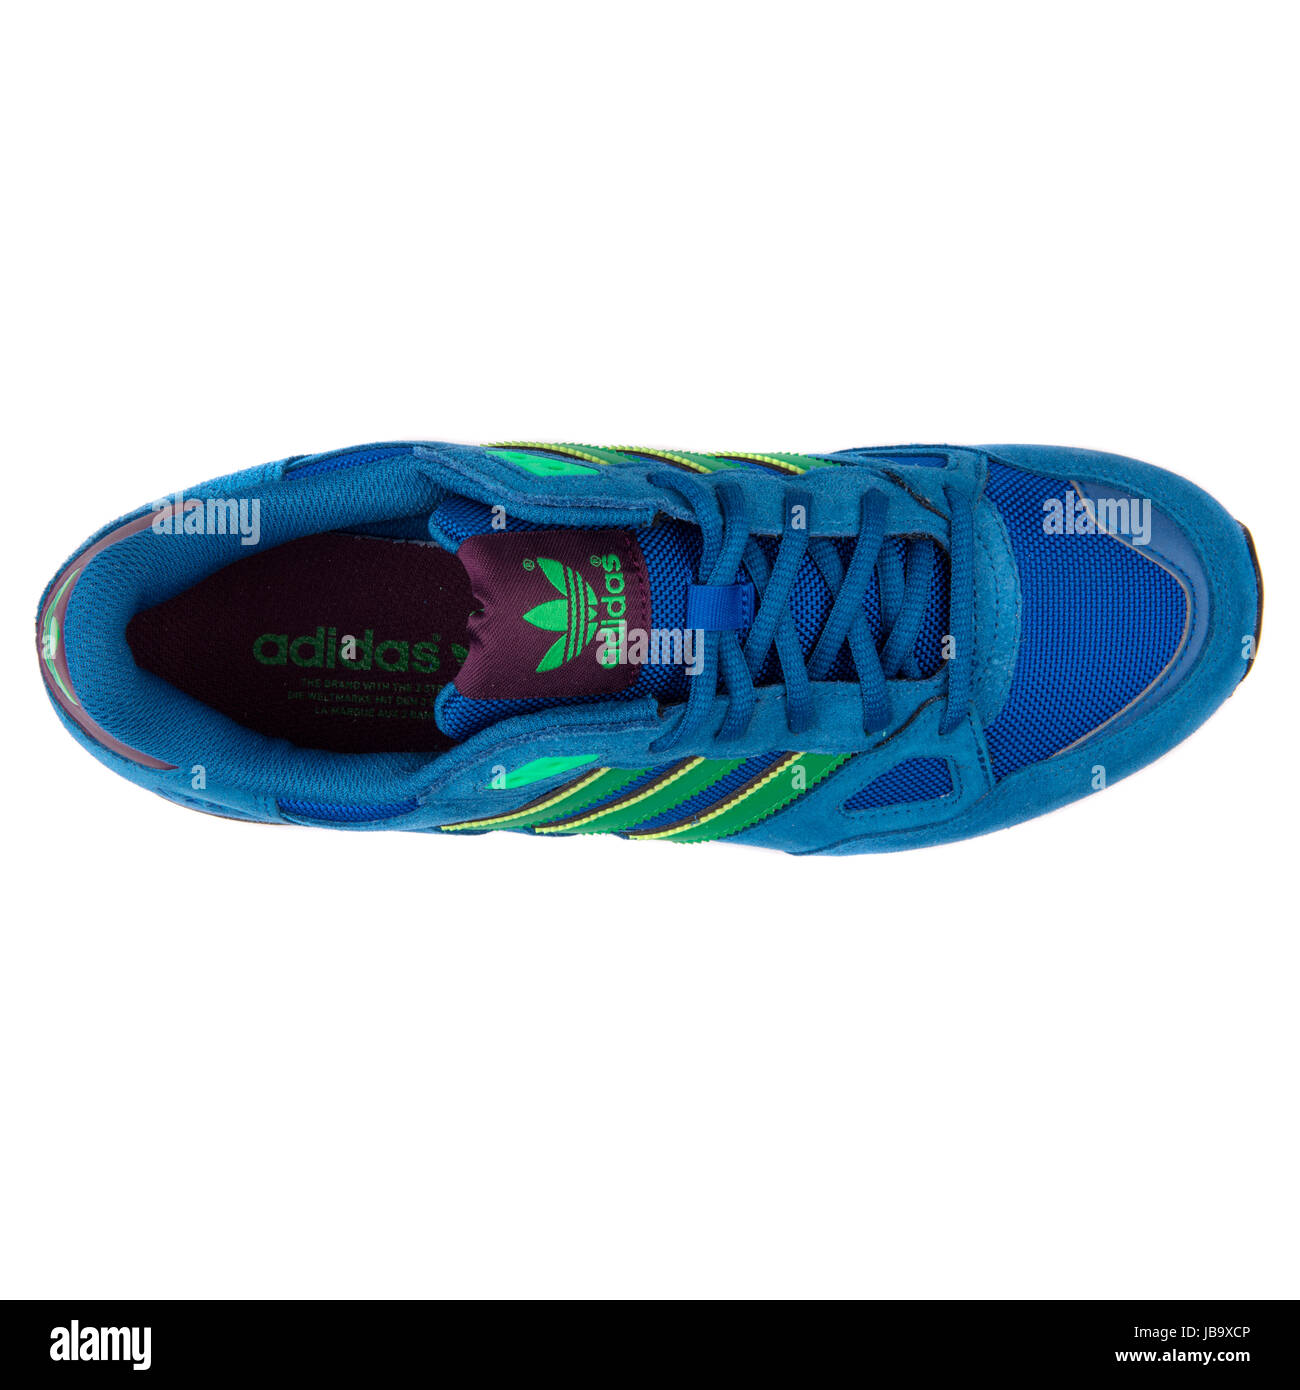 Adidas ZX verde los deportes masculinos Sneakers - B24857 Fotografía de stock - Alamy